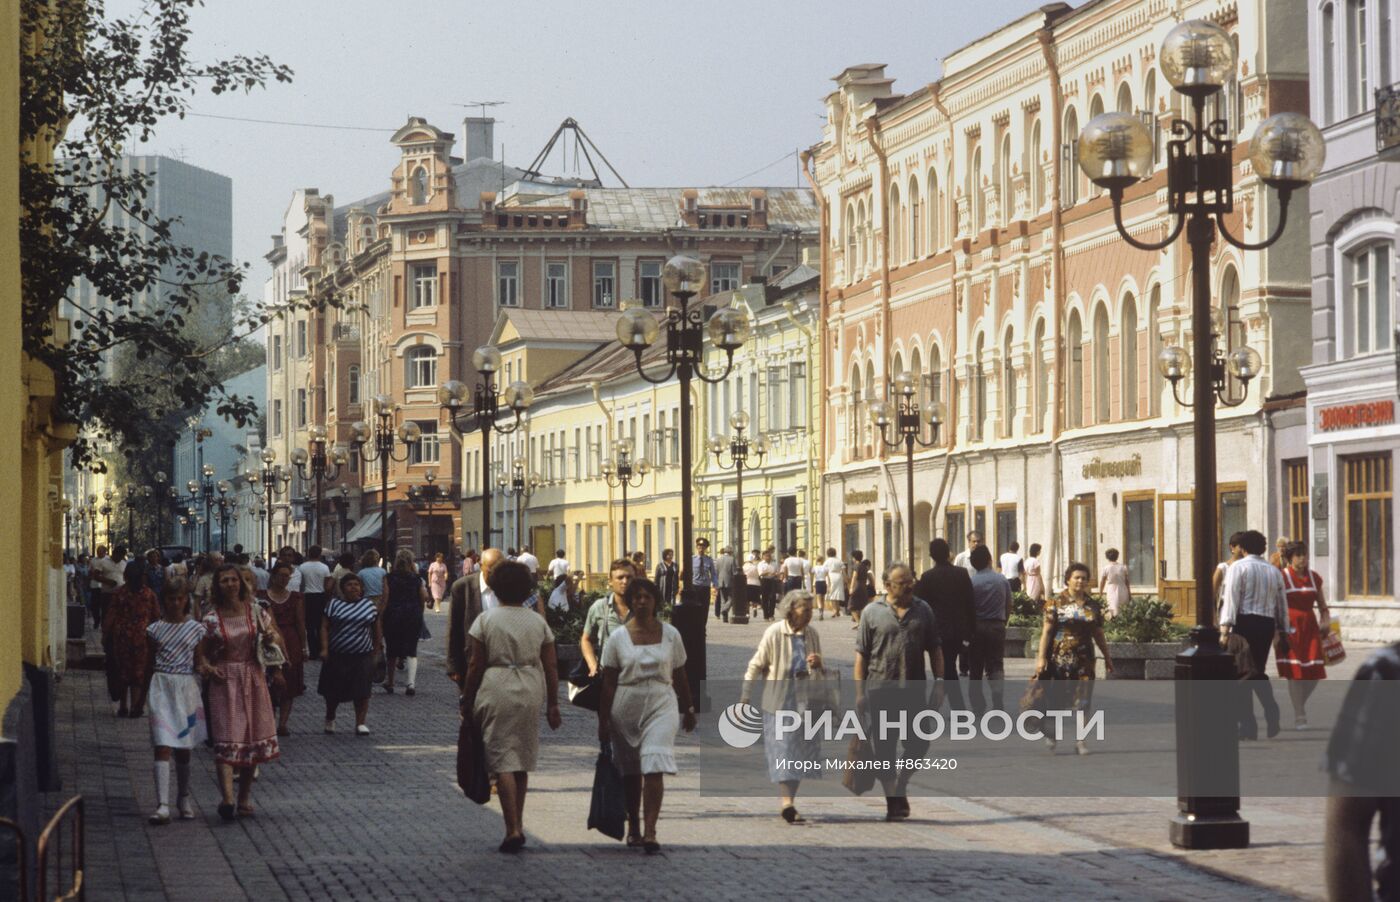 Улиц Арбат – старейшая улица в Москве